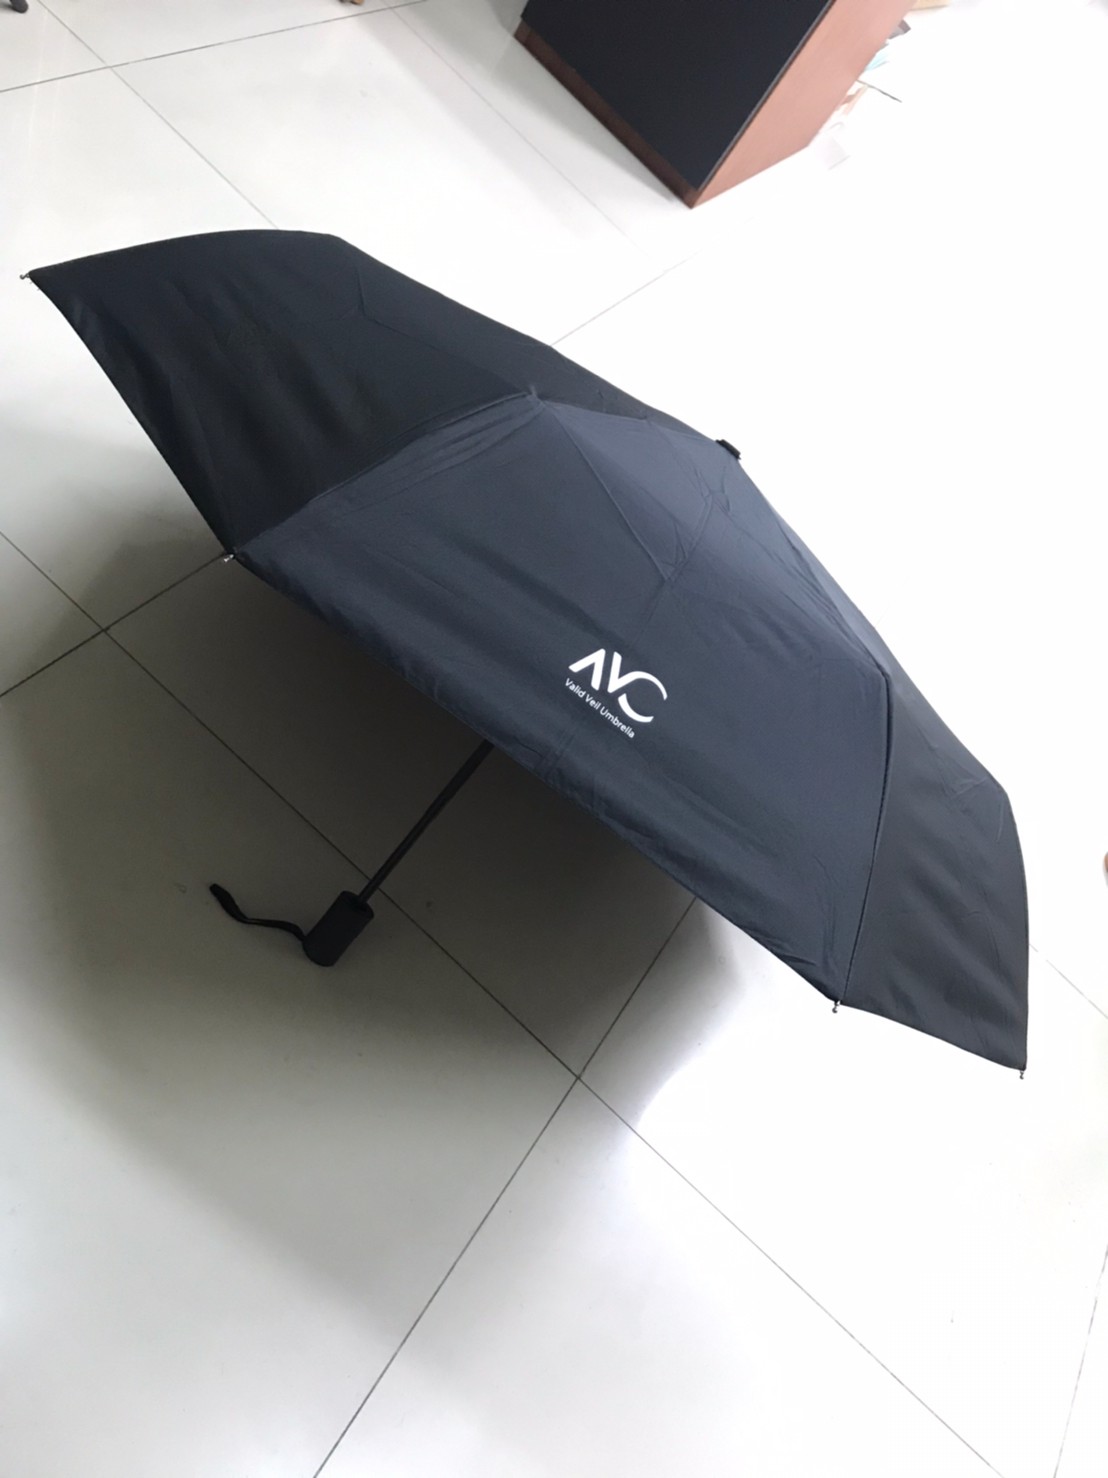 Umbrella ร่มพับ 3 ตอน กัน UV กันฝน☔️น้ำหนักเบา พกพาได้สะดวกมีความสวยงามสามารถใช้ได้ทุกฤดู ผลิตจากวัสดุคุณภาพดีขนาดของร่มยาว 26*96*65 CM. -VAC-